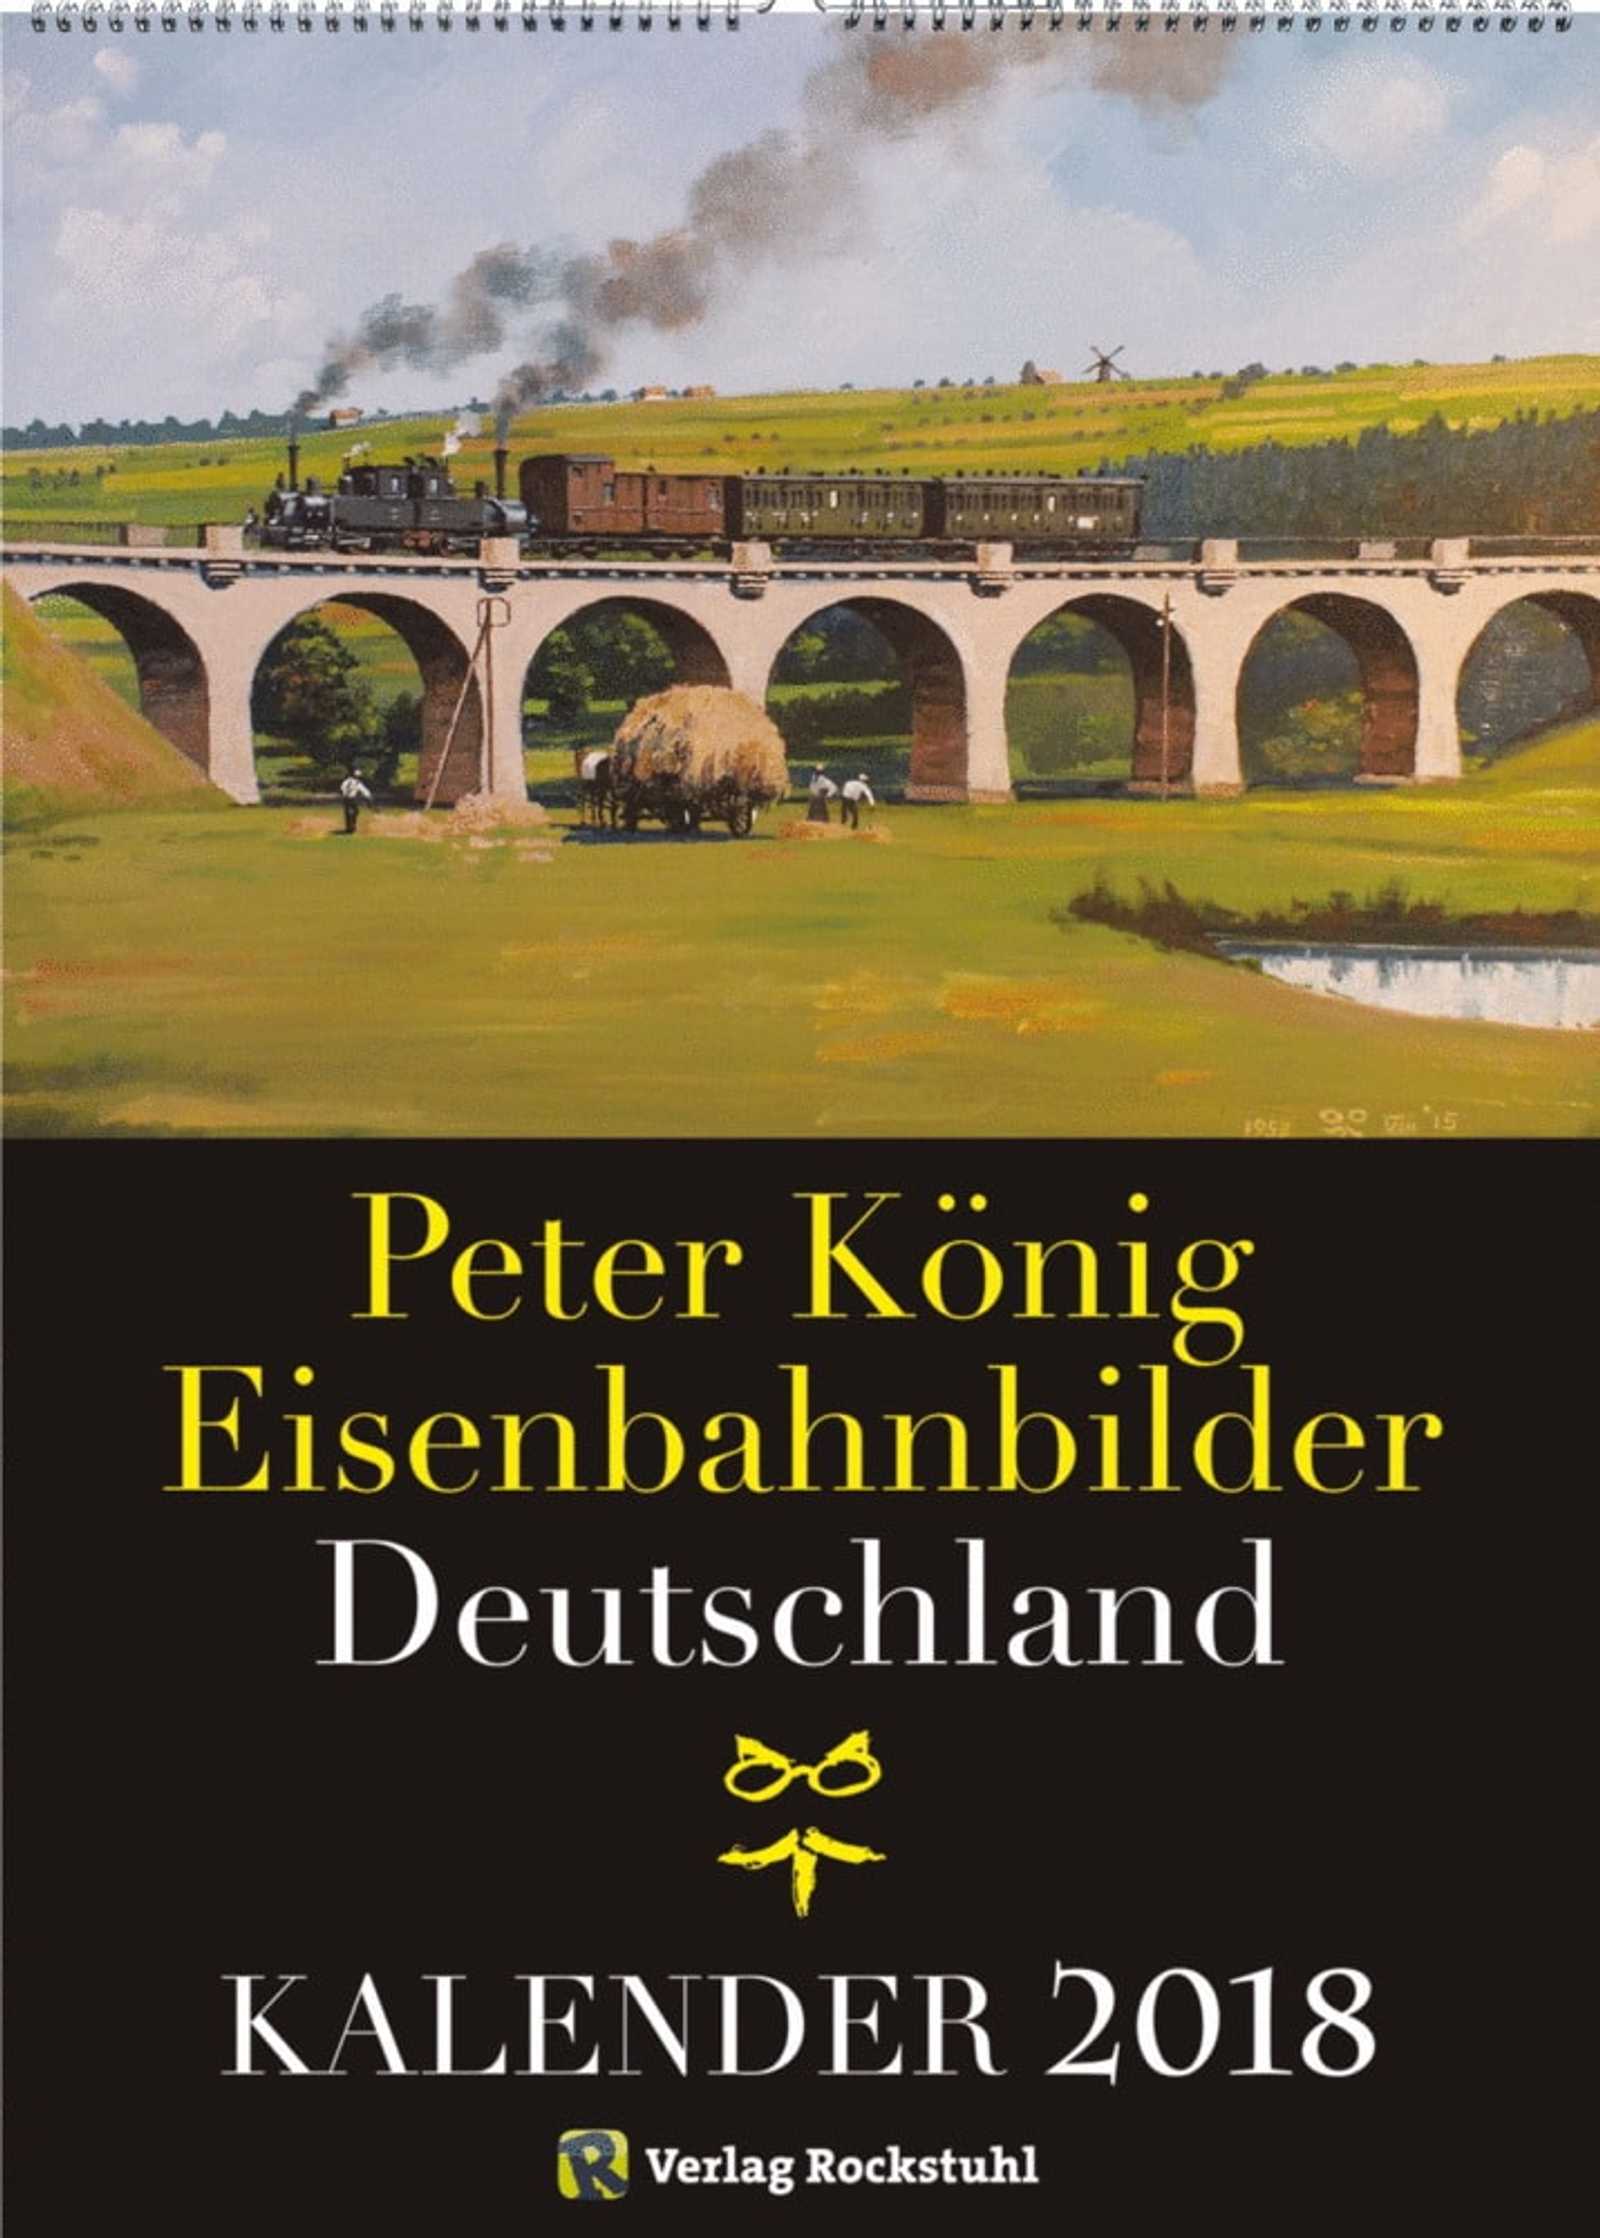 Coverbild Kalender „Eisenbahnbilder Deutschland“ 2018